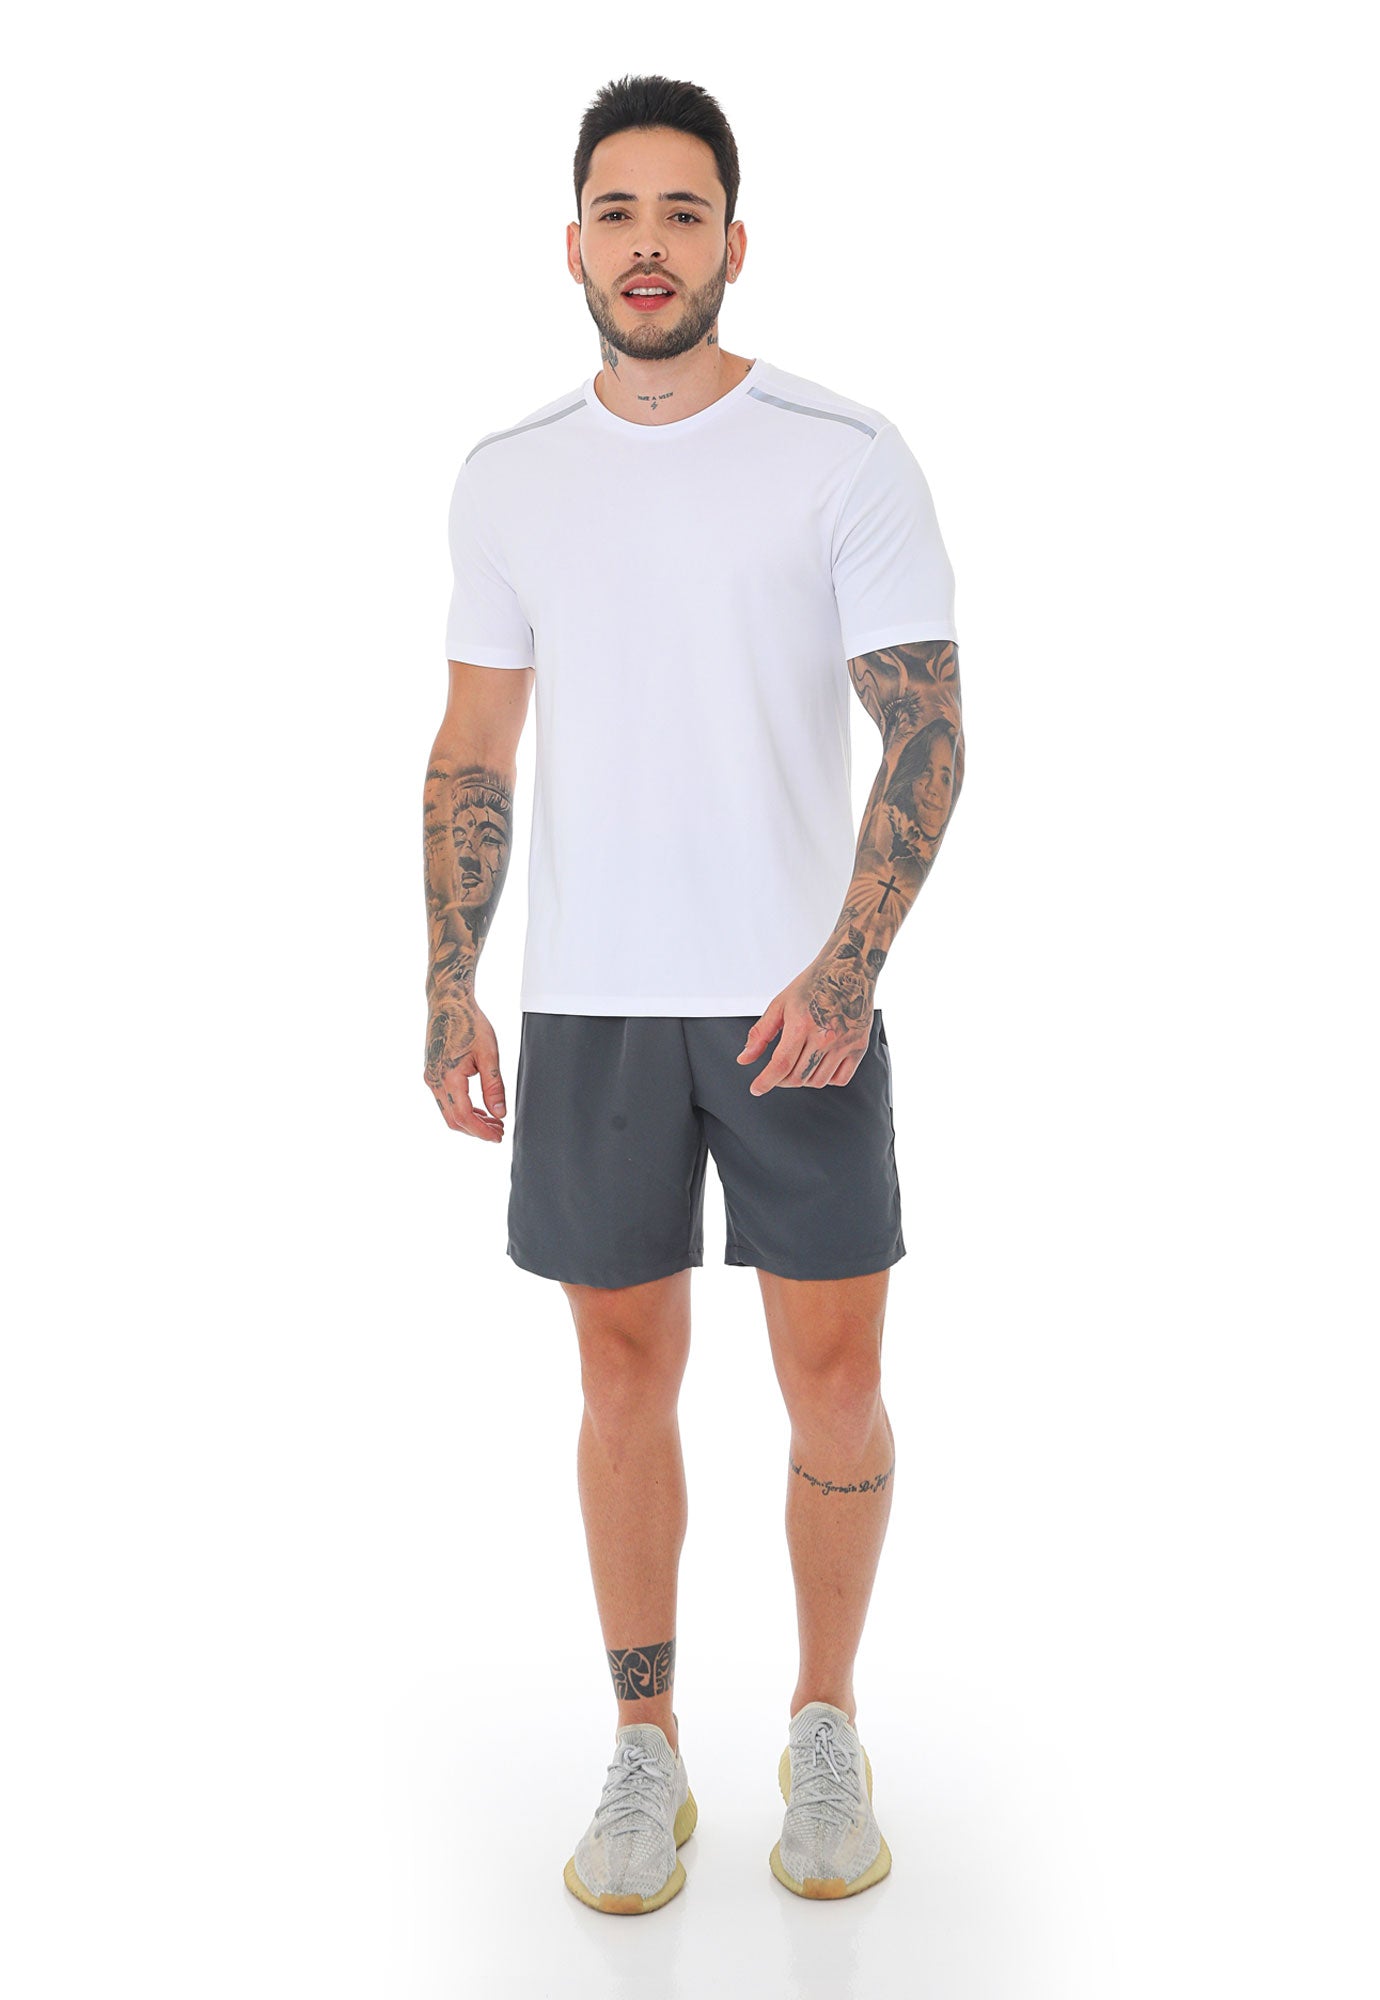 Pantaloneta deportiva gris con bloques laterales y ciclista interno para hombre